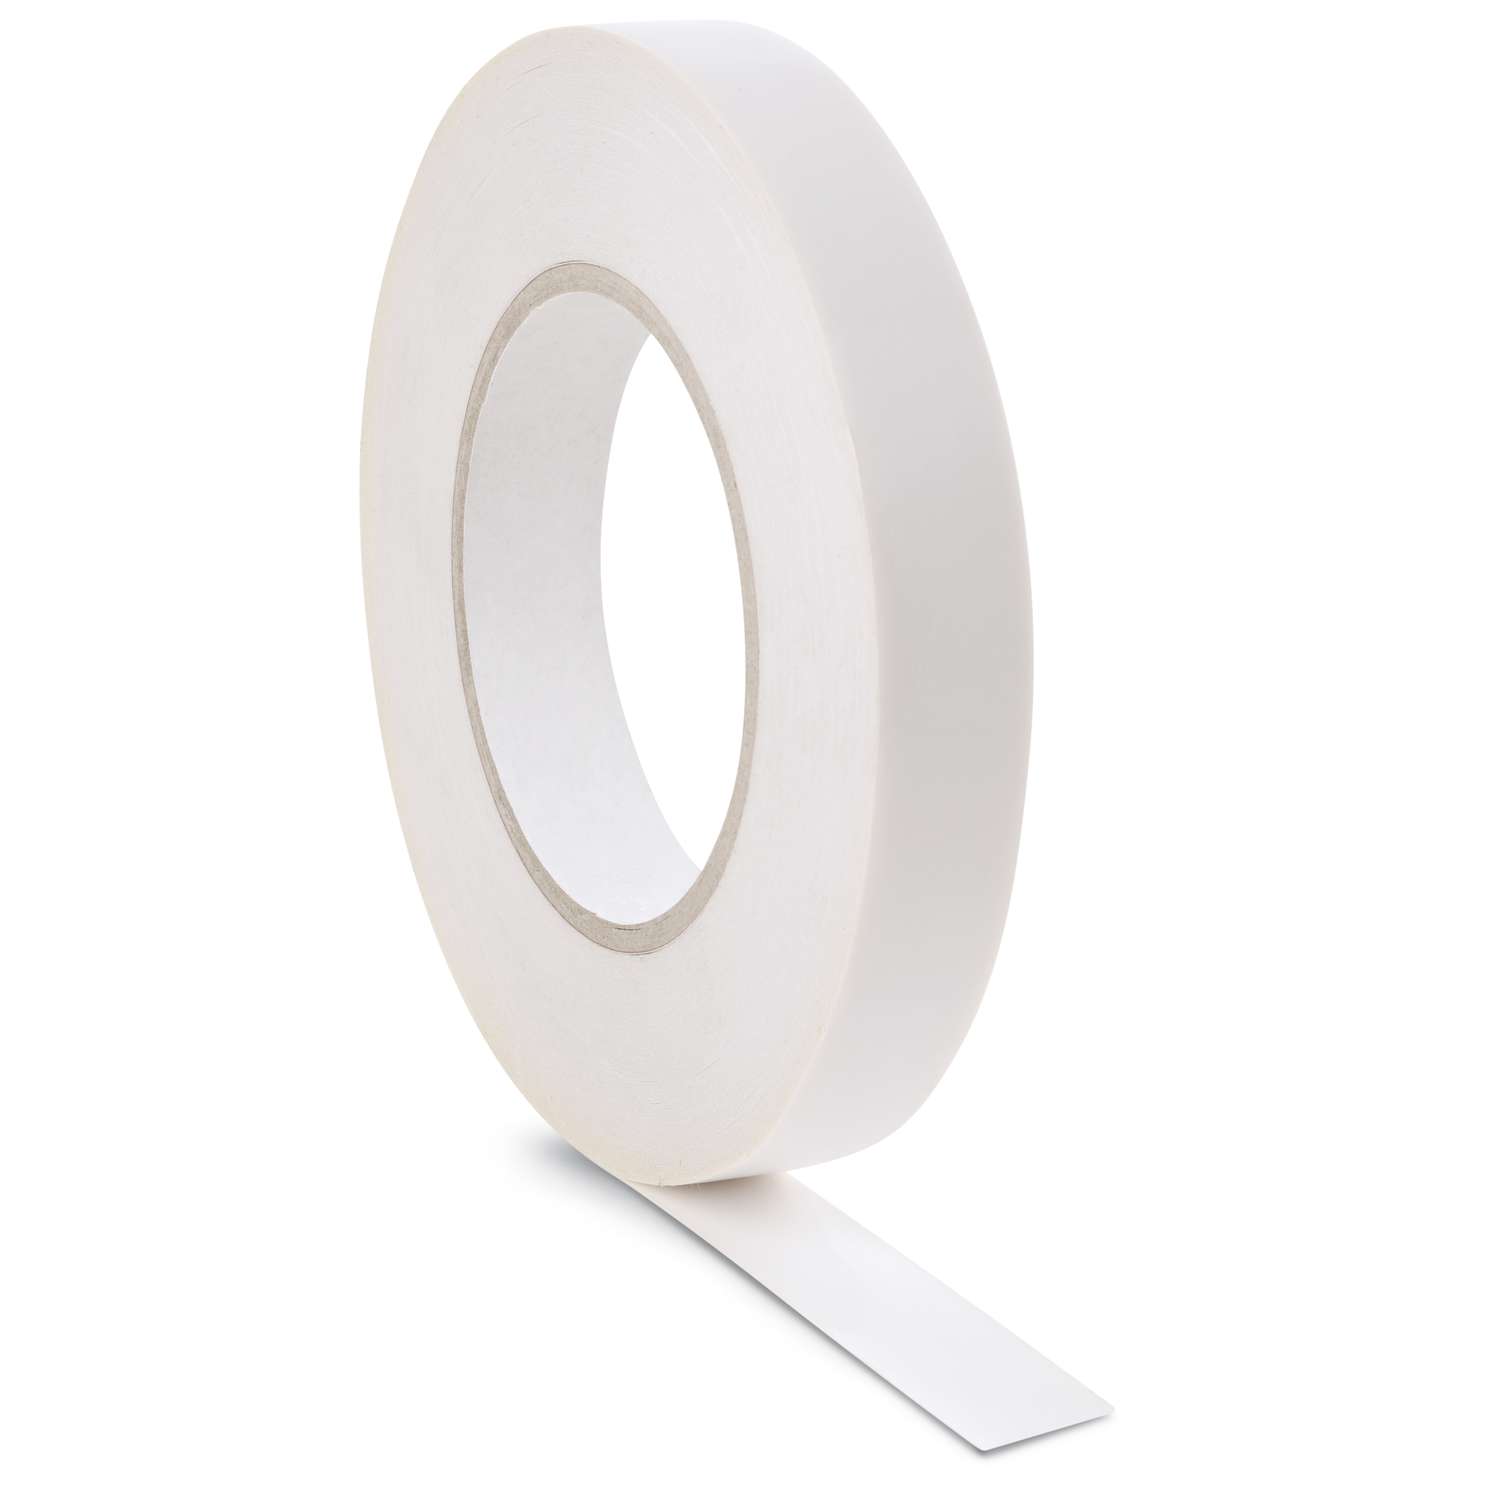 nastro adesivo in plastica trasparente Washi Tape Cutter Dispenser per nastro adesivo Washi White